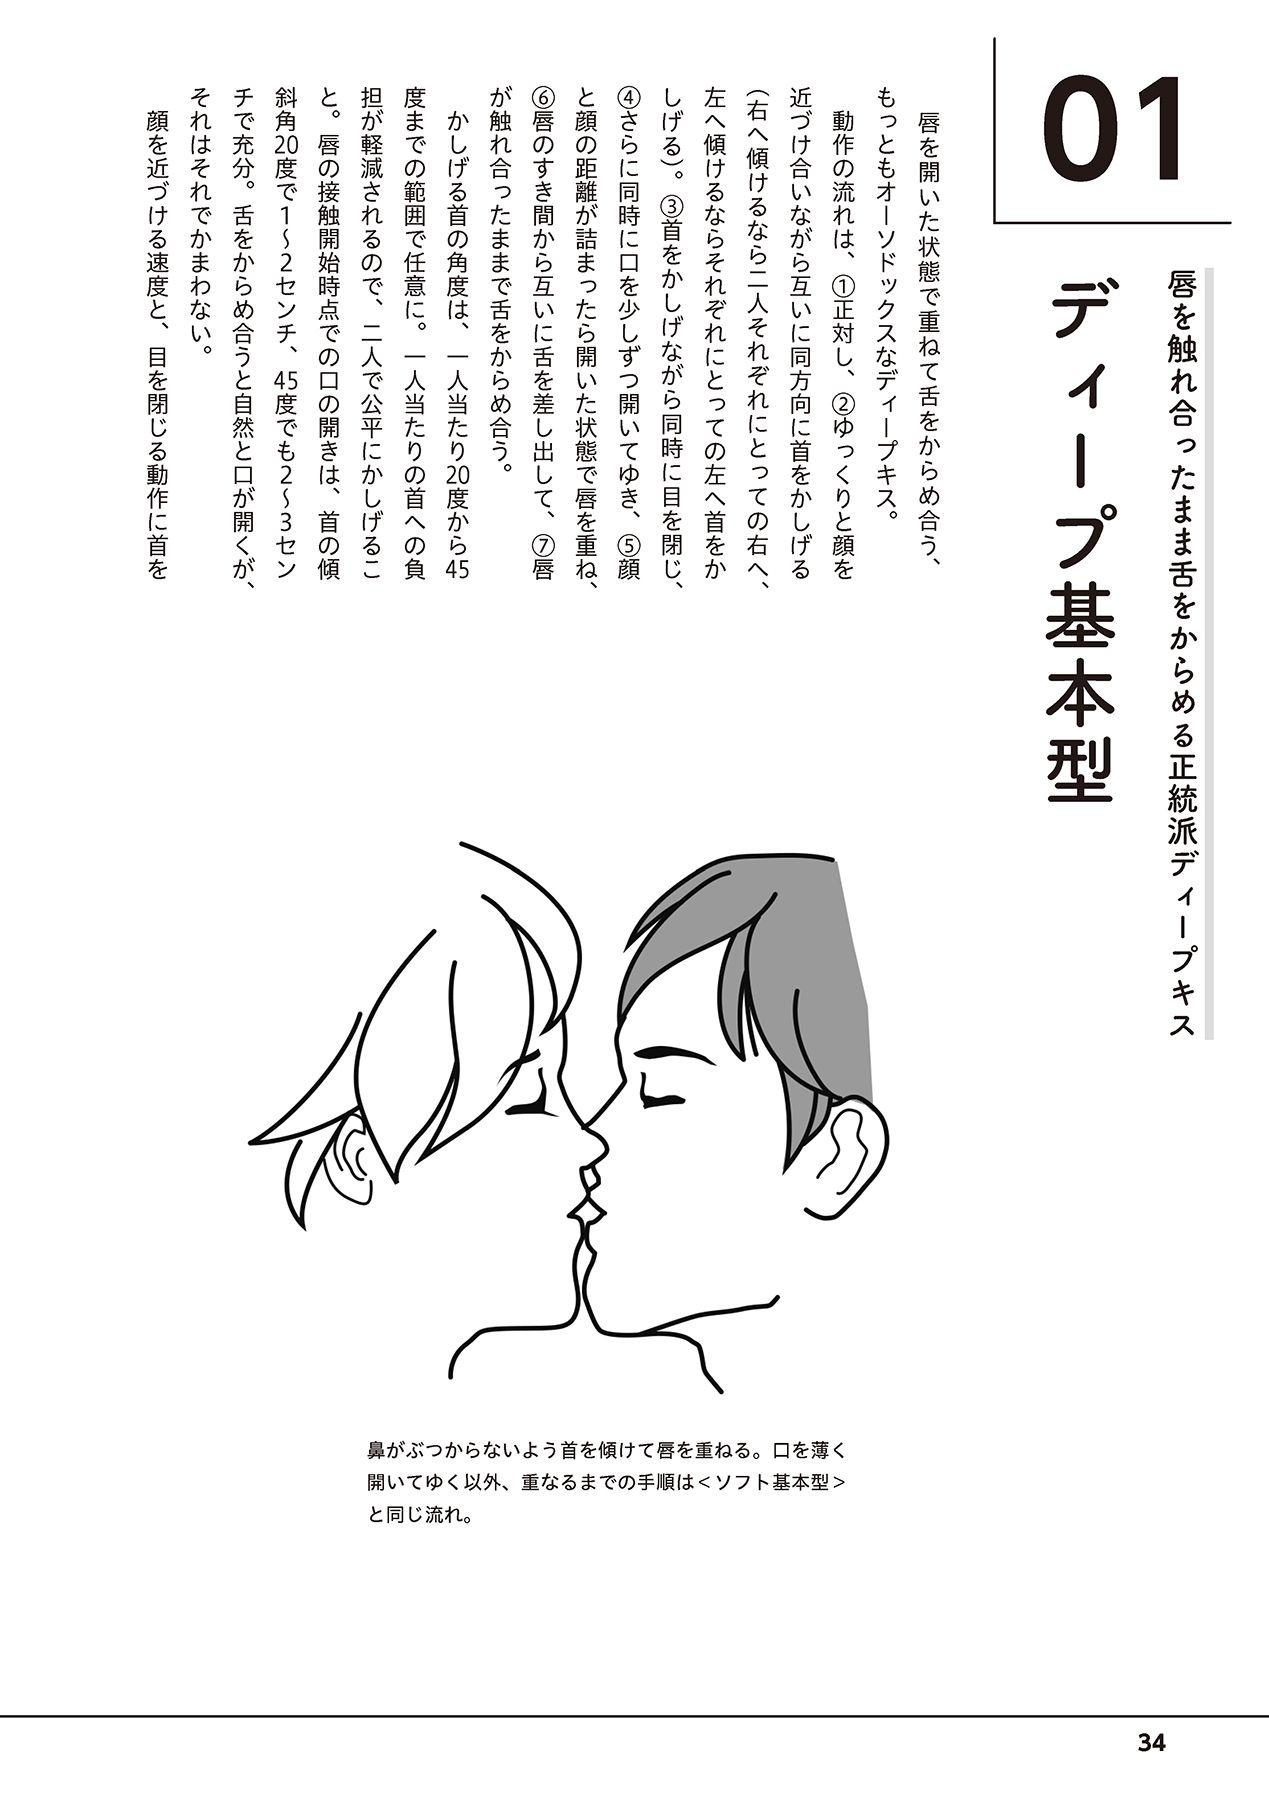 唇と舌の性感開発・キス完全マニュアル イラスト版……とろキス 35